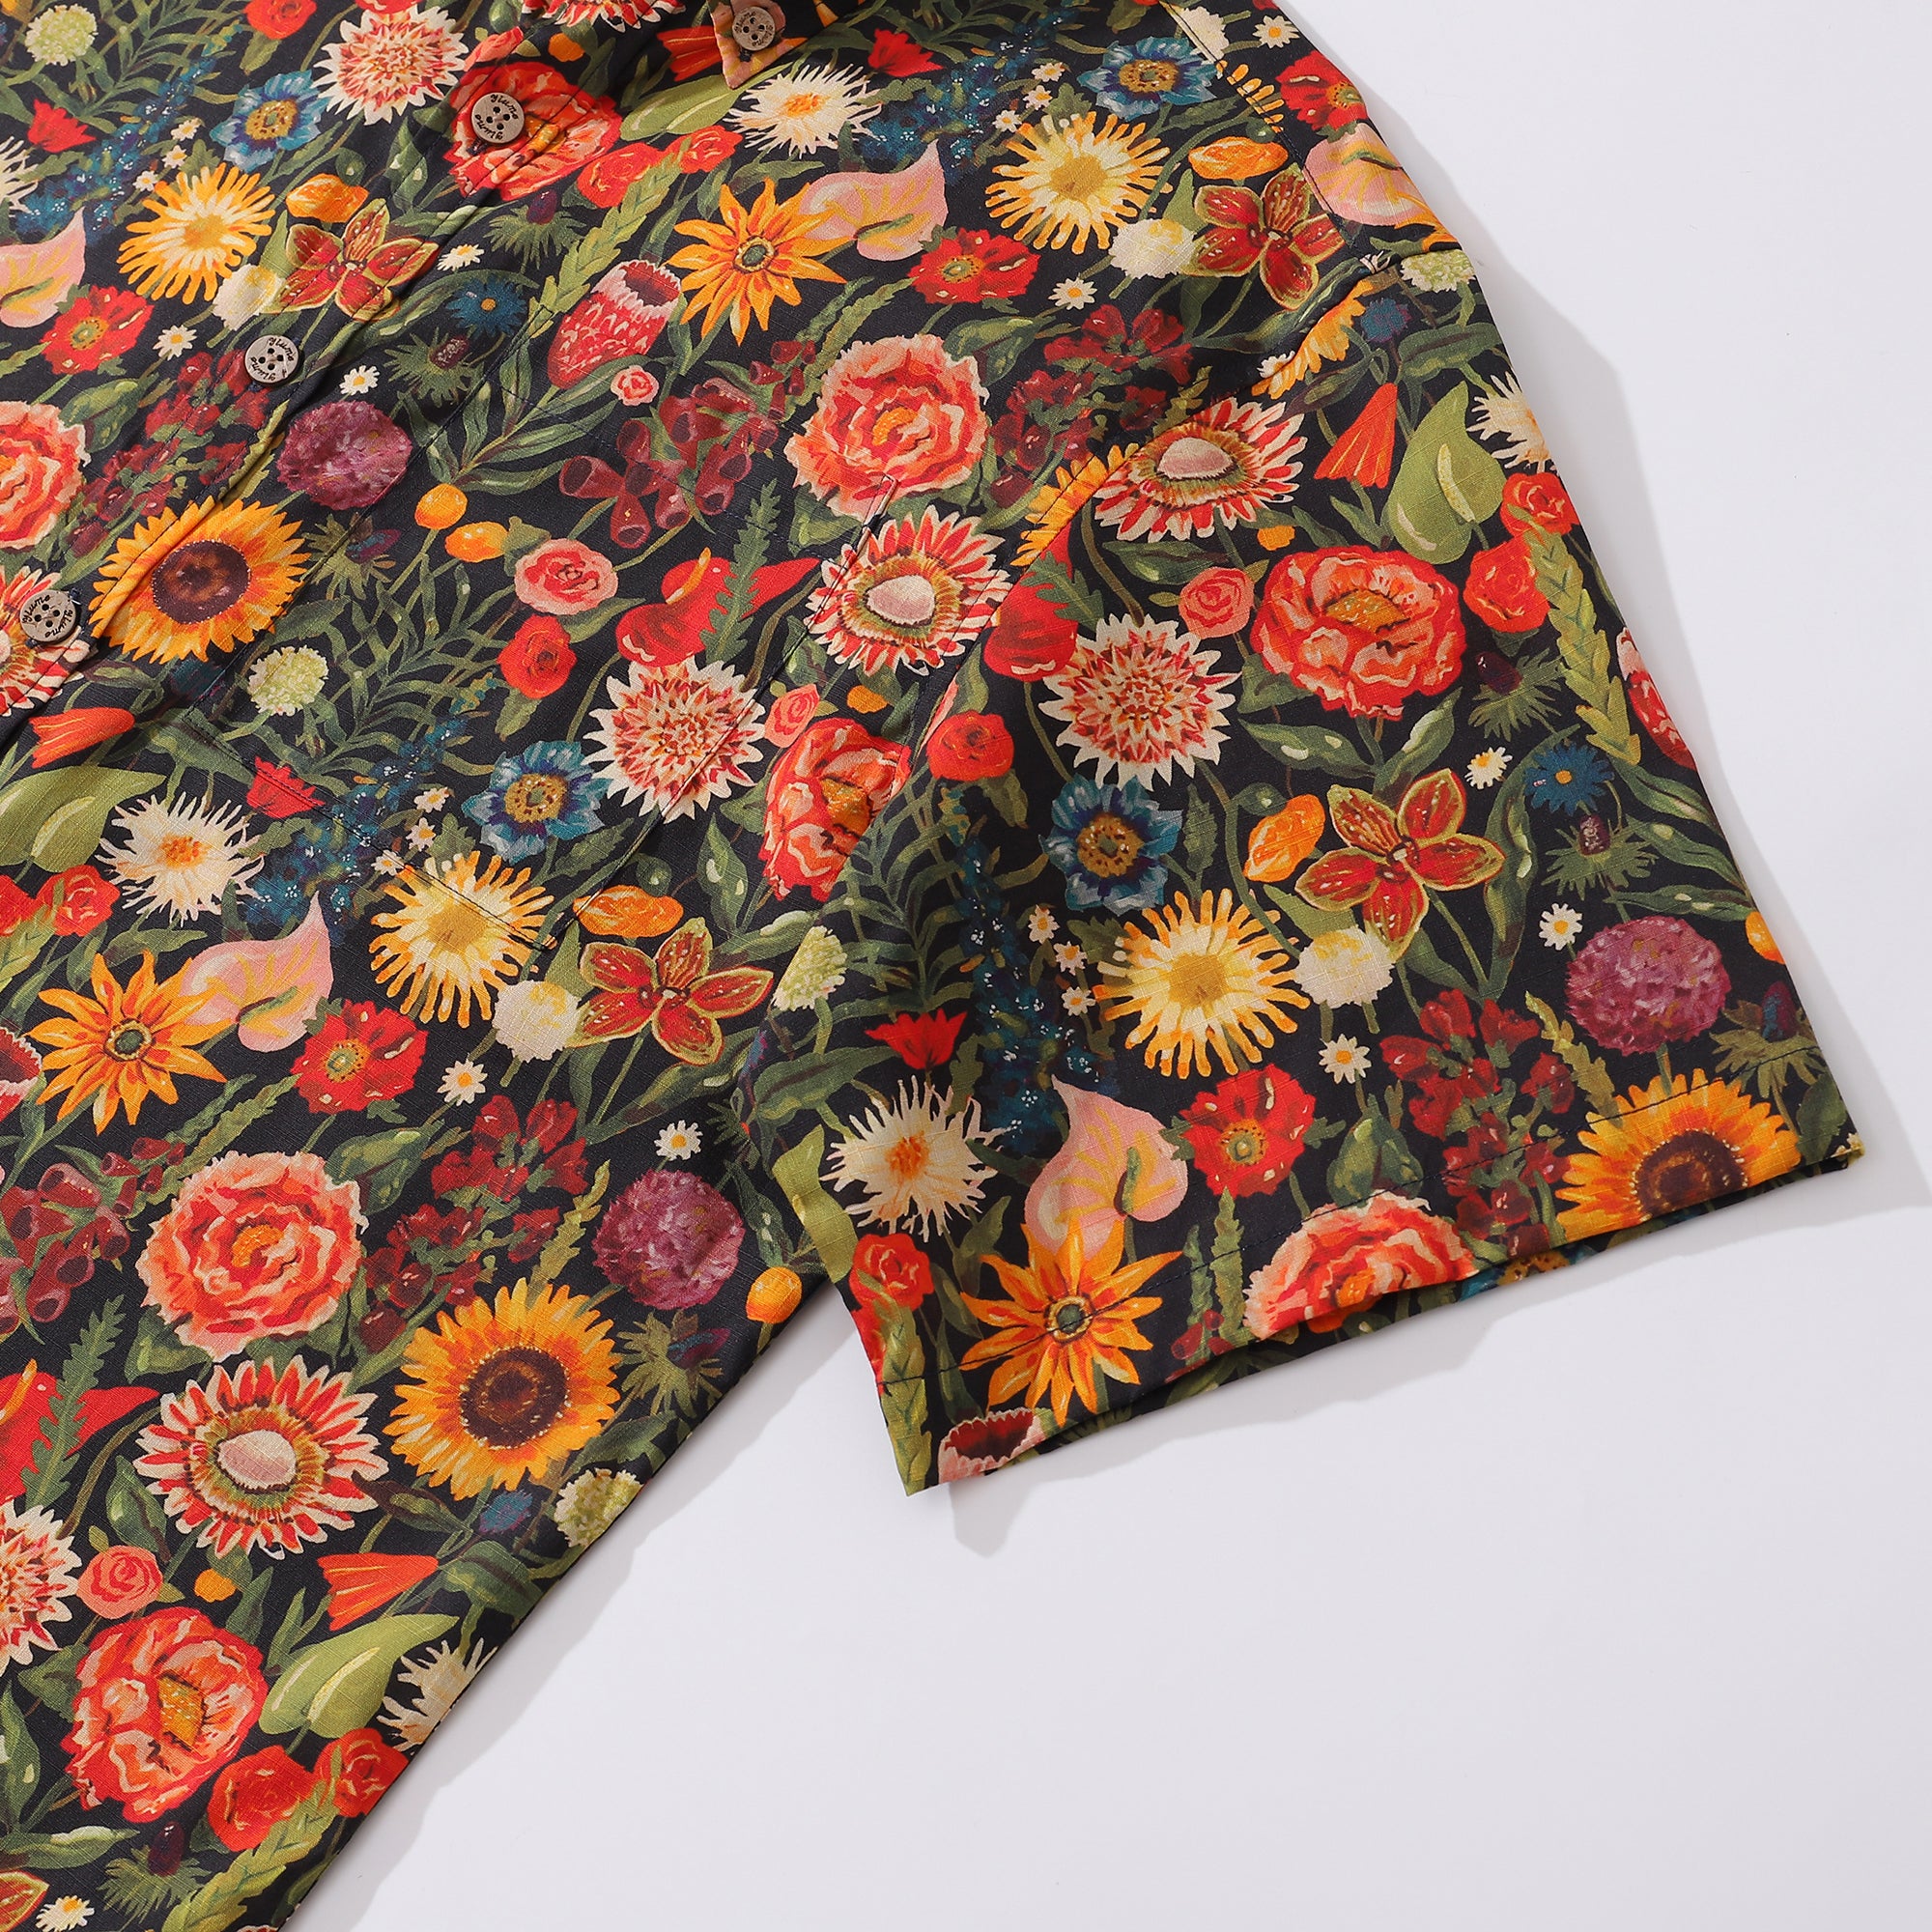 1930s Vintage Hawaiian Shirt For Men Flowers Shirt Button-down Short Sleeve 100% Cotton Shirt